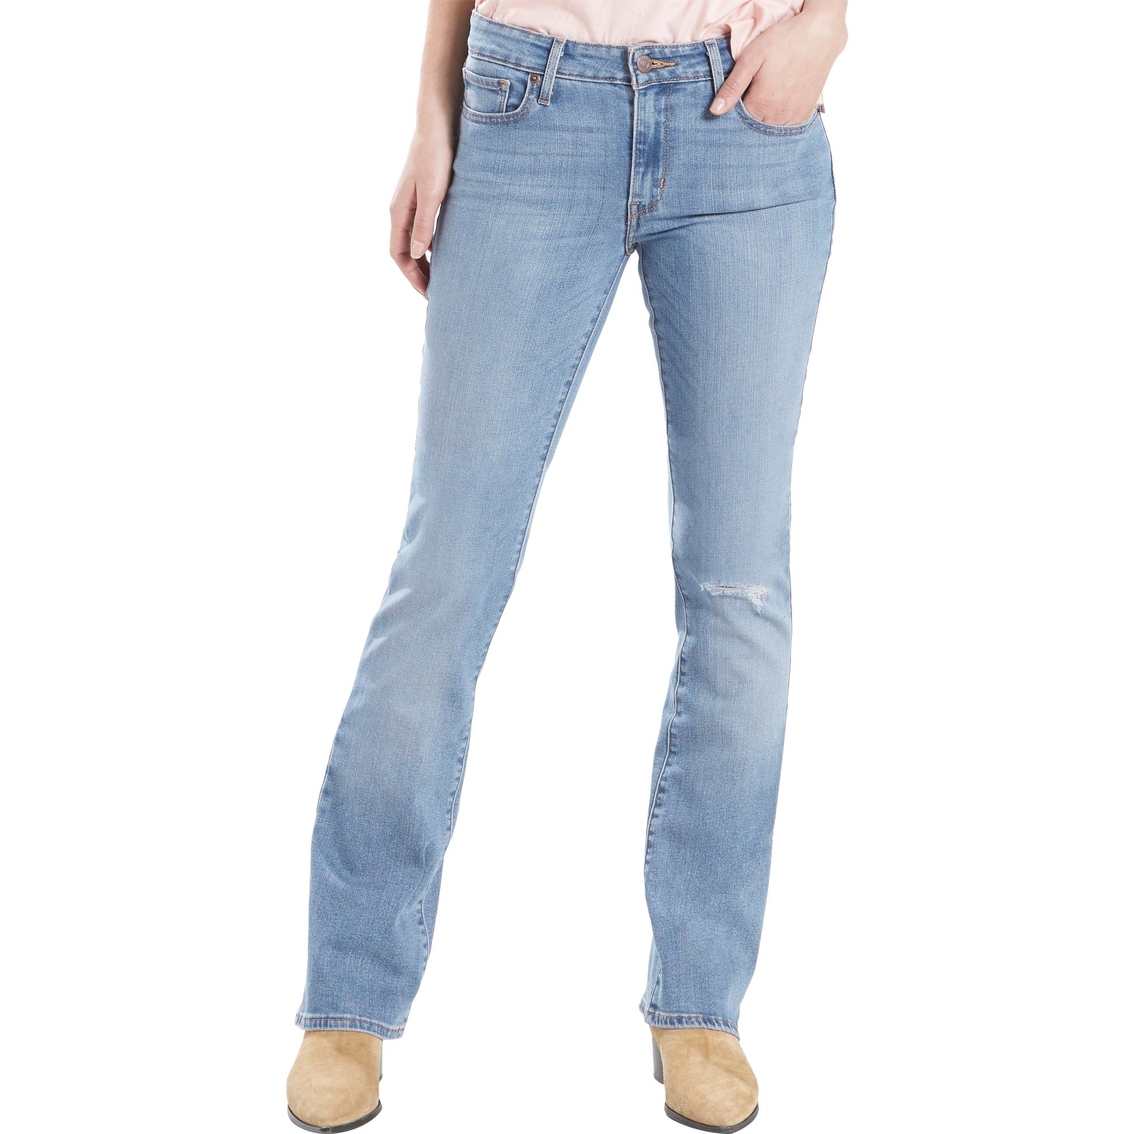 Arriba 51+ imagen levi’s 715 vintage bootcut jeans